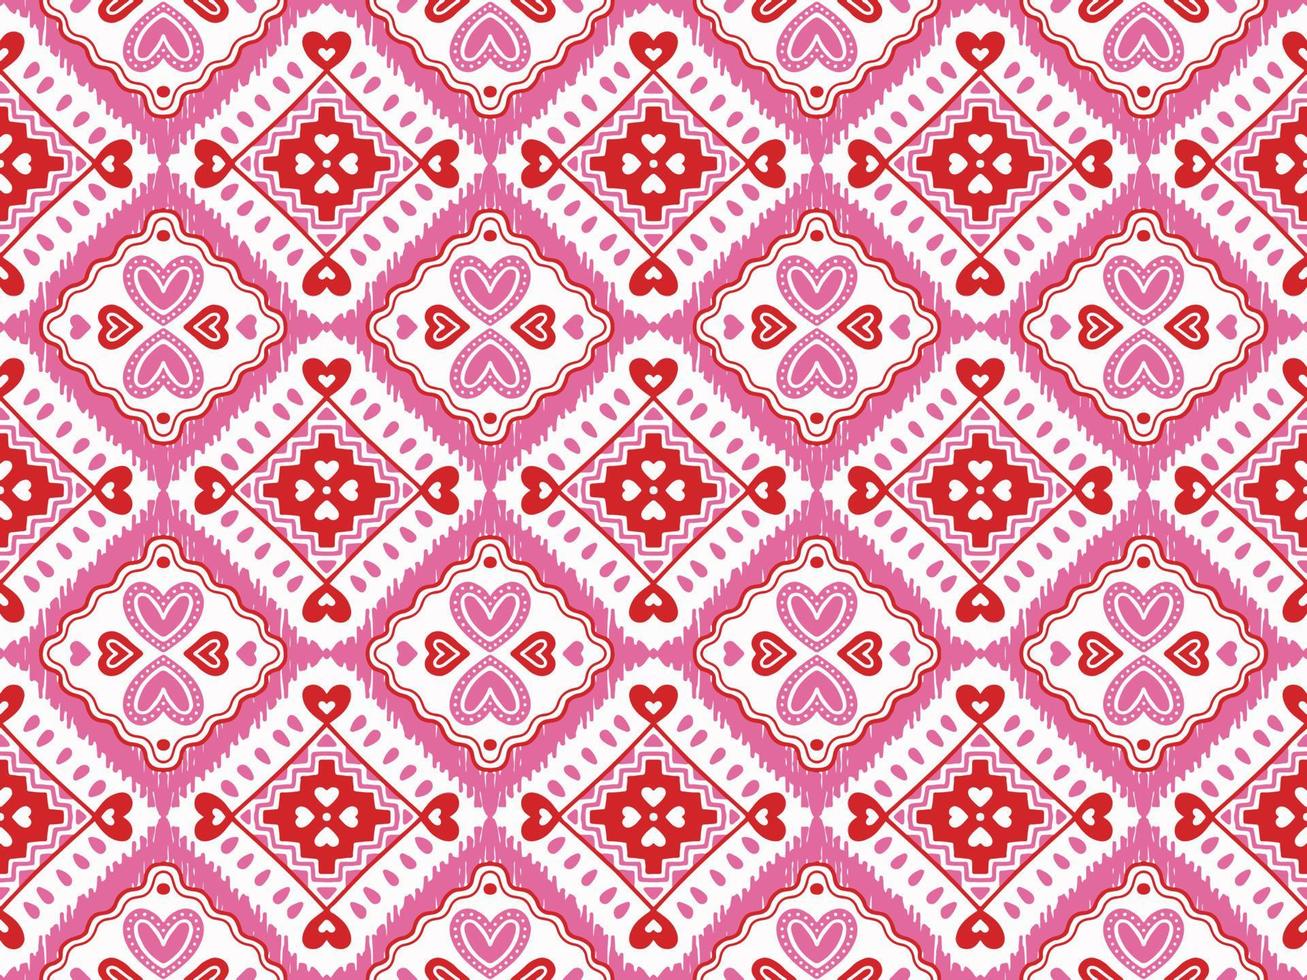 abstract schattig valentijnsdag dag liefde hart roze motief meetkundig tribal etnisch ikat volk oosters inheems patroon traditioneel ontwerp achtergrond,tapijt,behang,kleding,stof,verpakking,print,streep vector